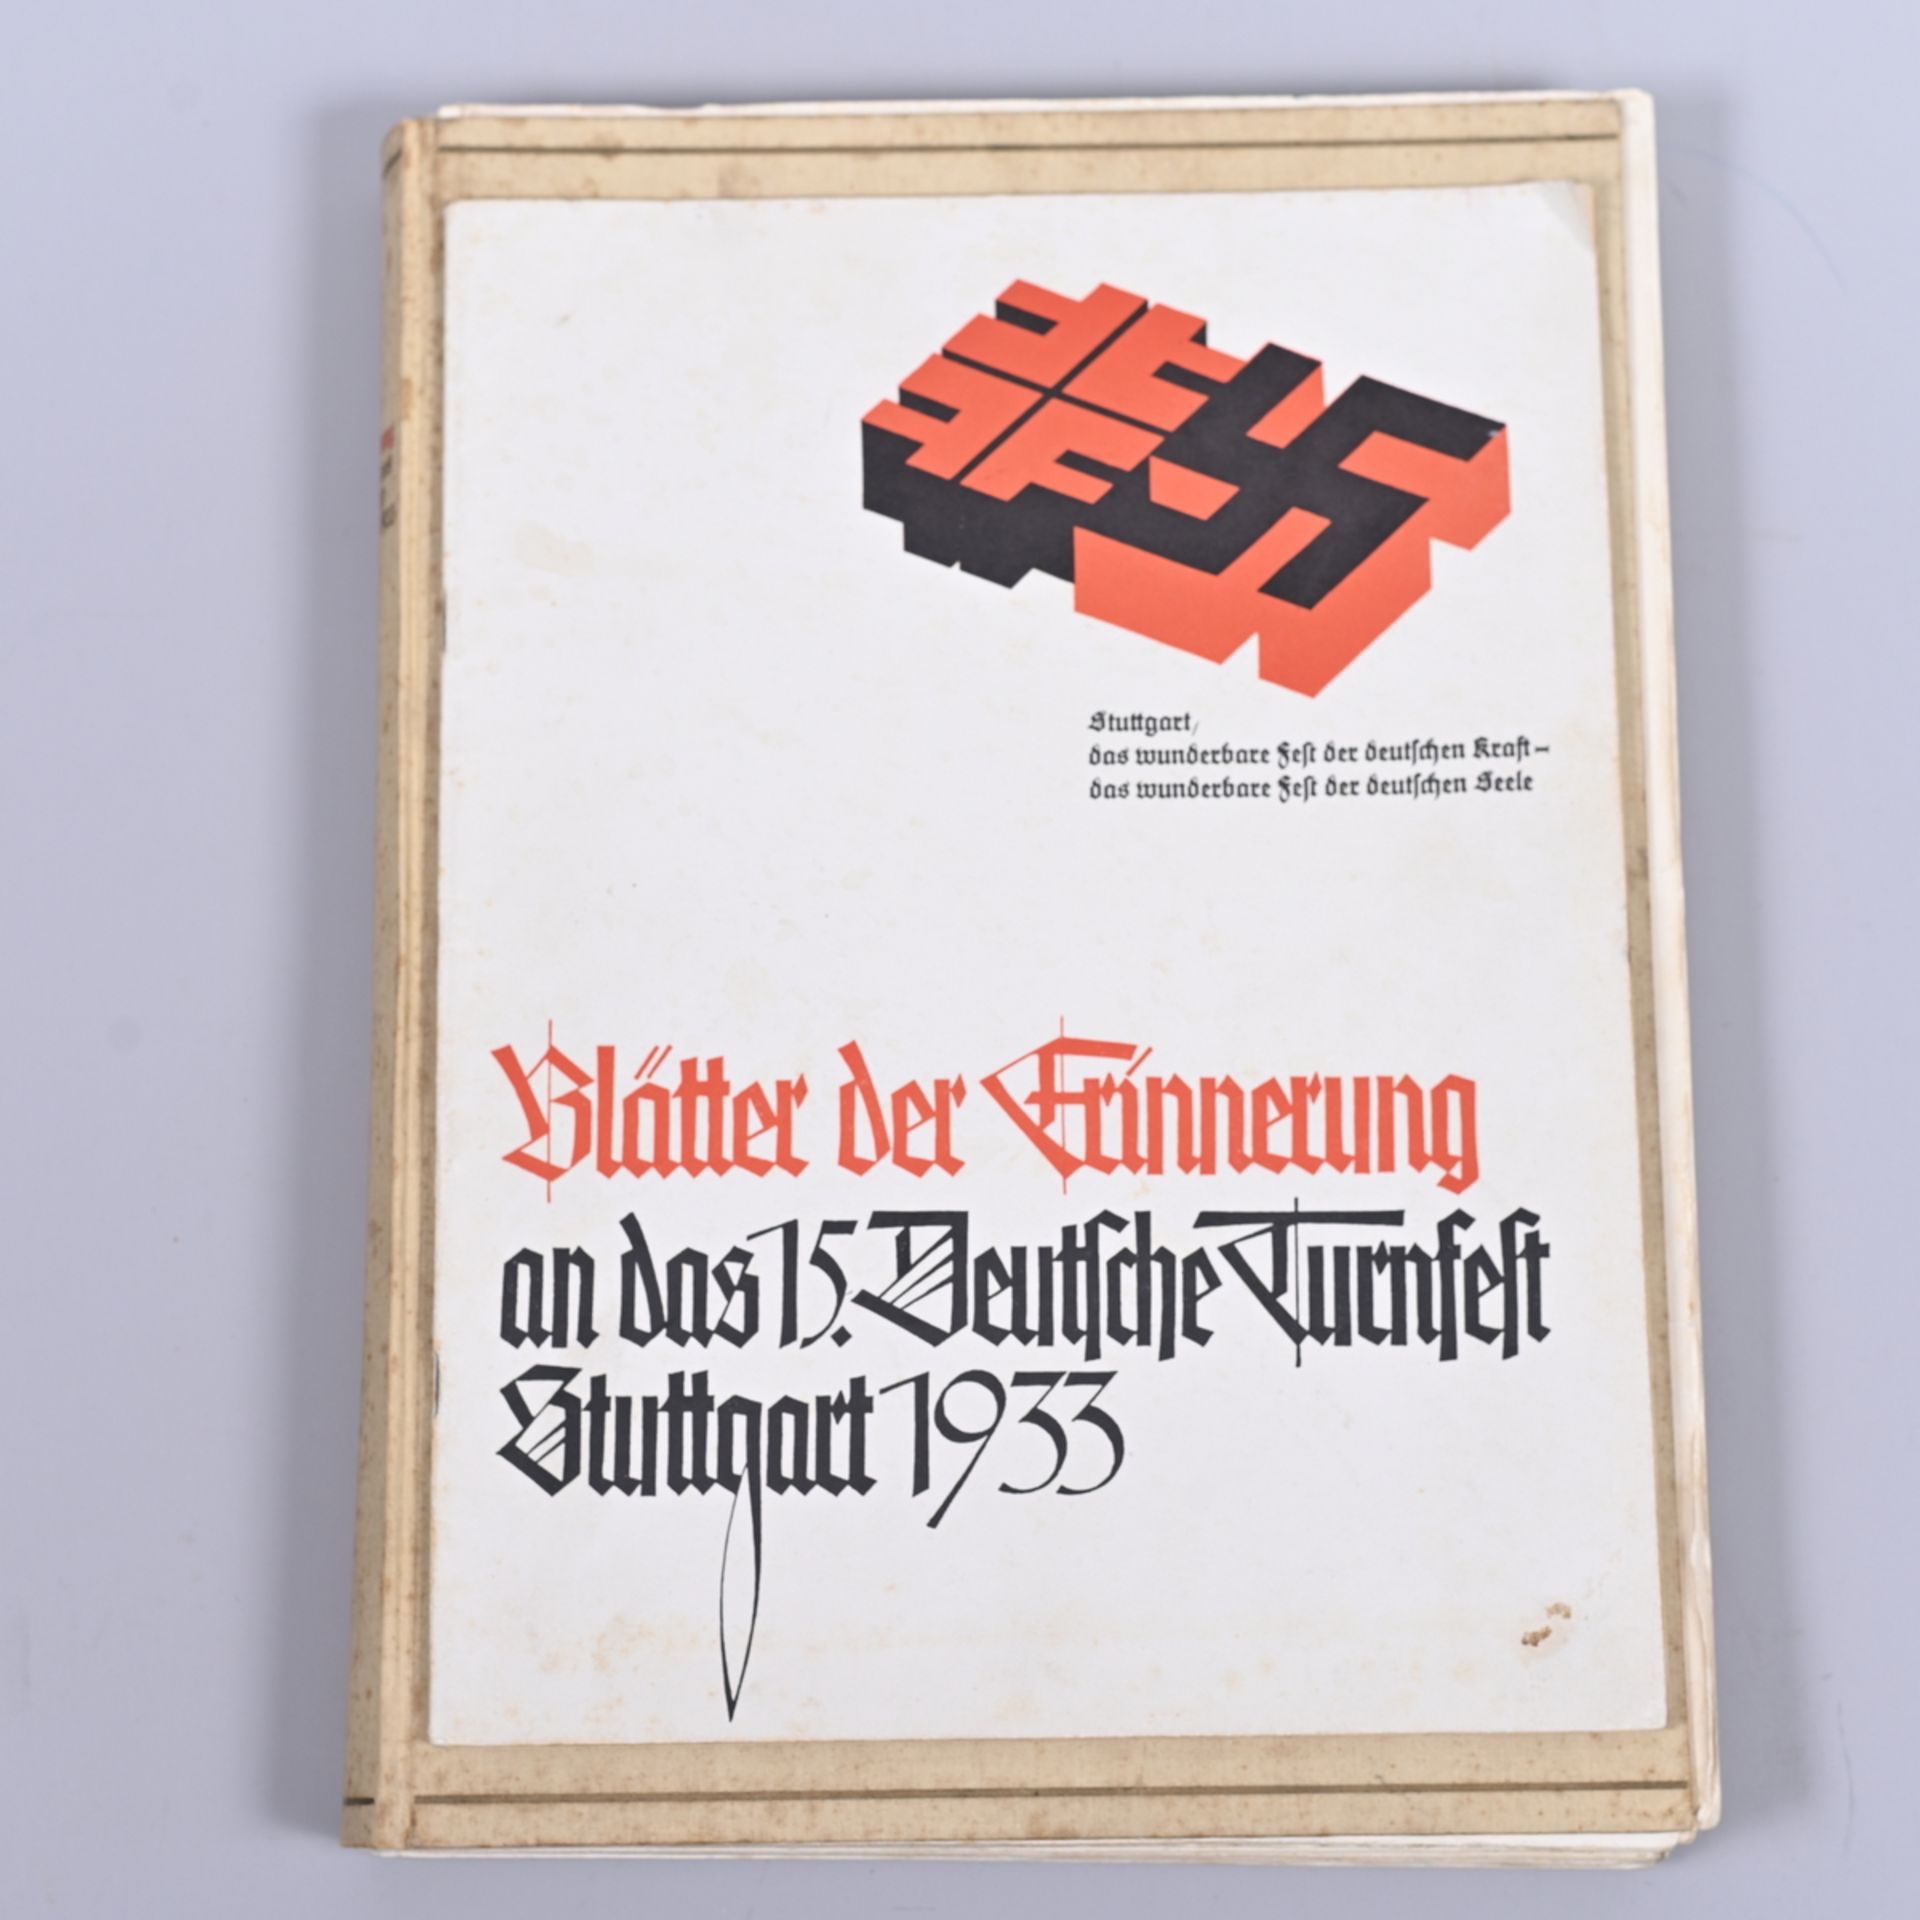 Festzeitung zum 15. Deutschen Turnfest, Stuttgart 1933, mit Beiheft "Blätter der Erinnerung", 14 - Bild 2 aus 2